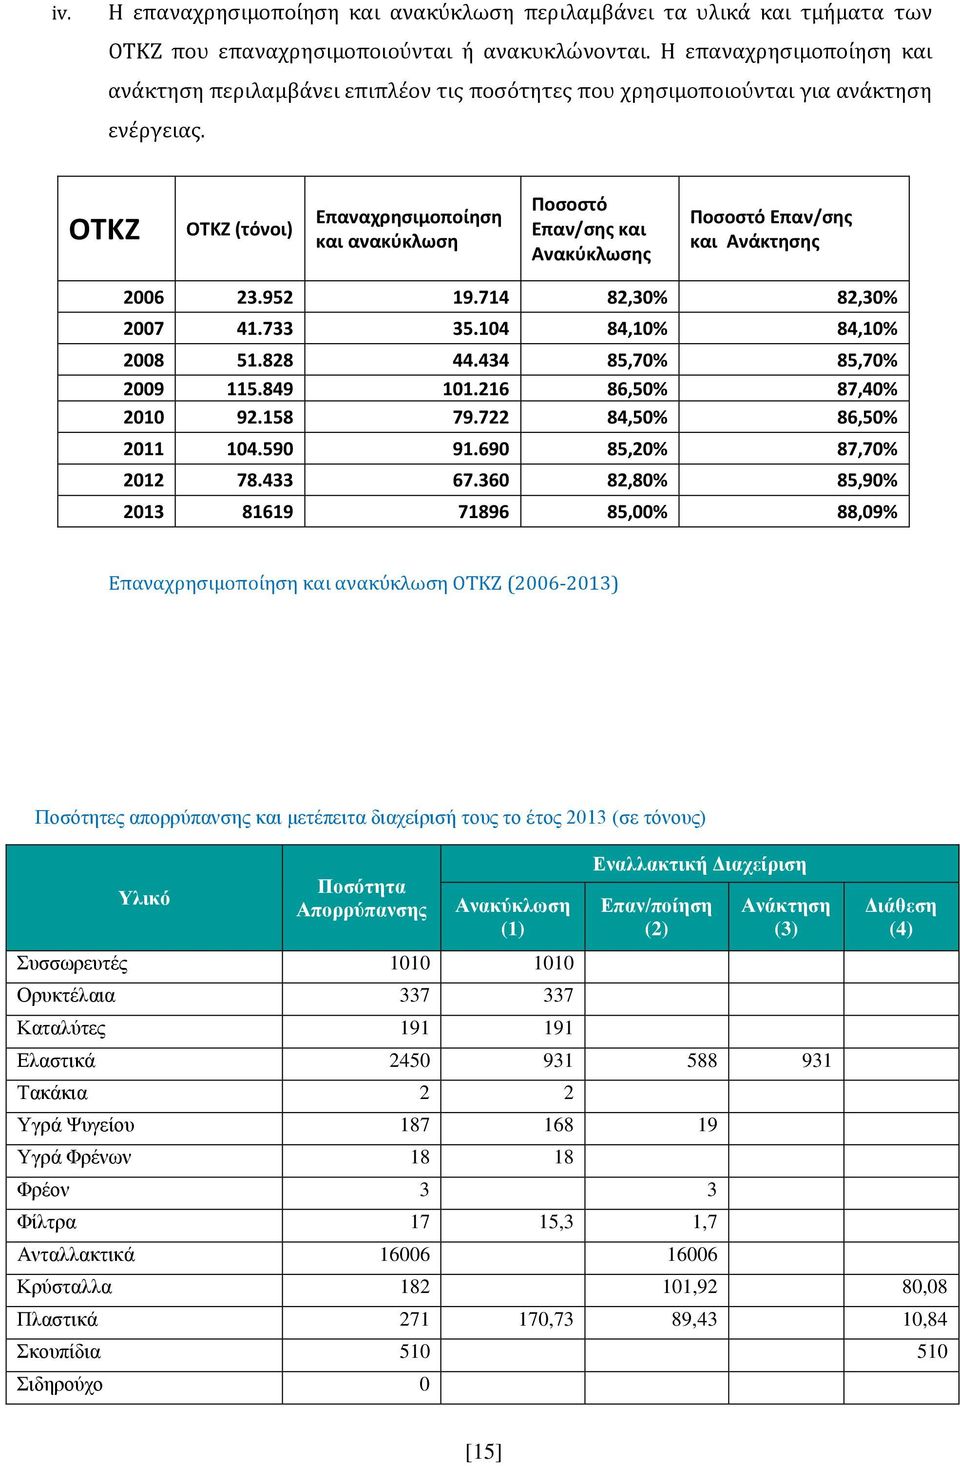 ΟΤΚΖ ΟΤΚΖ (τόνοι) Επαναχρησιμοποίηση και ανακύκλωση Ποσοστό Επαν/σης και Ανακύκλωσης Ποσοστό Επαν/σης και Ανάκτησης 2006 23.952 19.714 82,30% 82,30% 2007 41.733 35.104 84,10% 84,10% 2008 51.828 44.